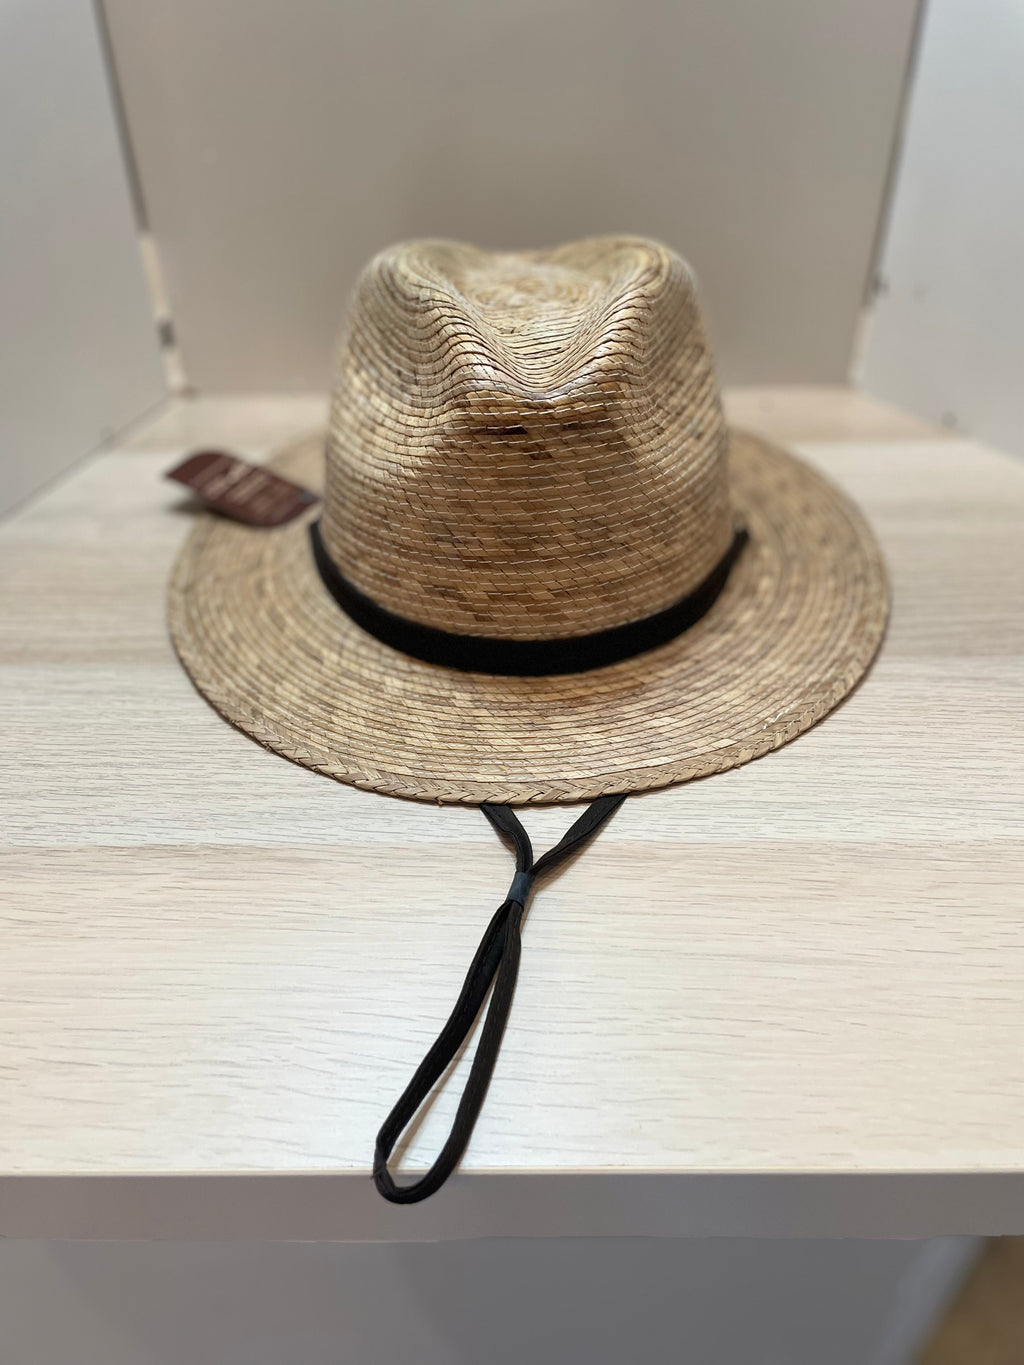 Straw Resort Hat w/ Lower Drawstring